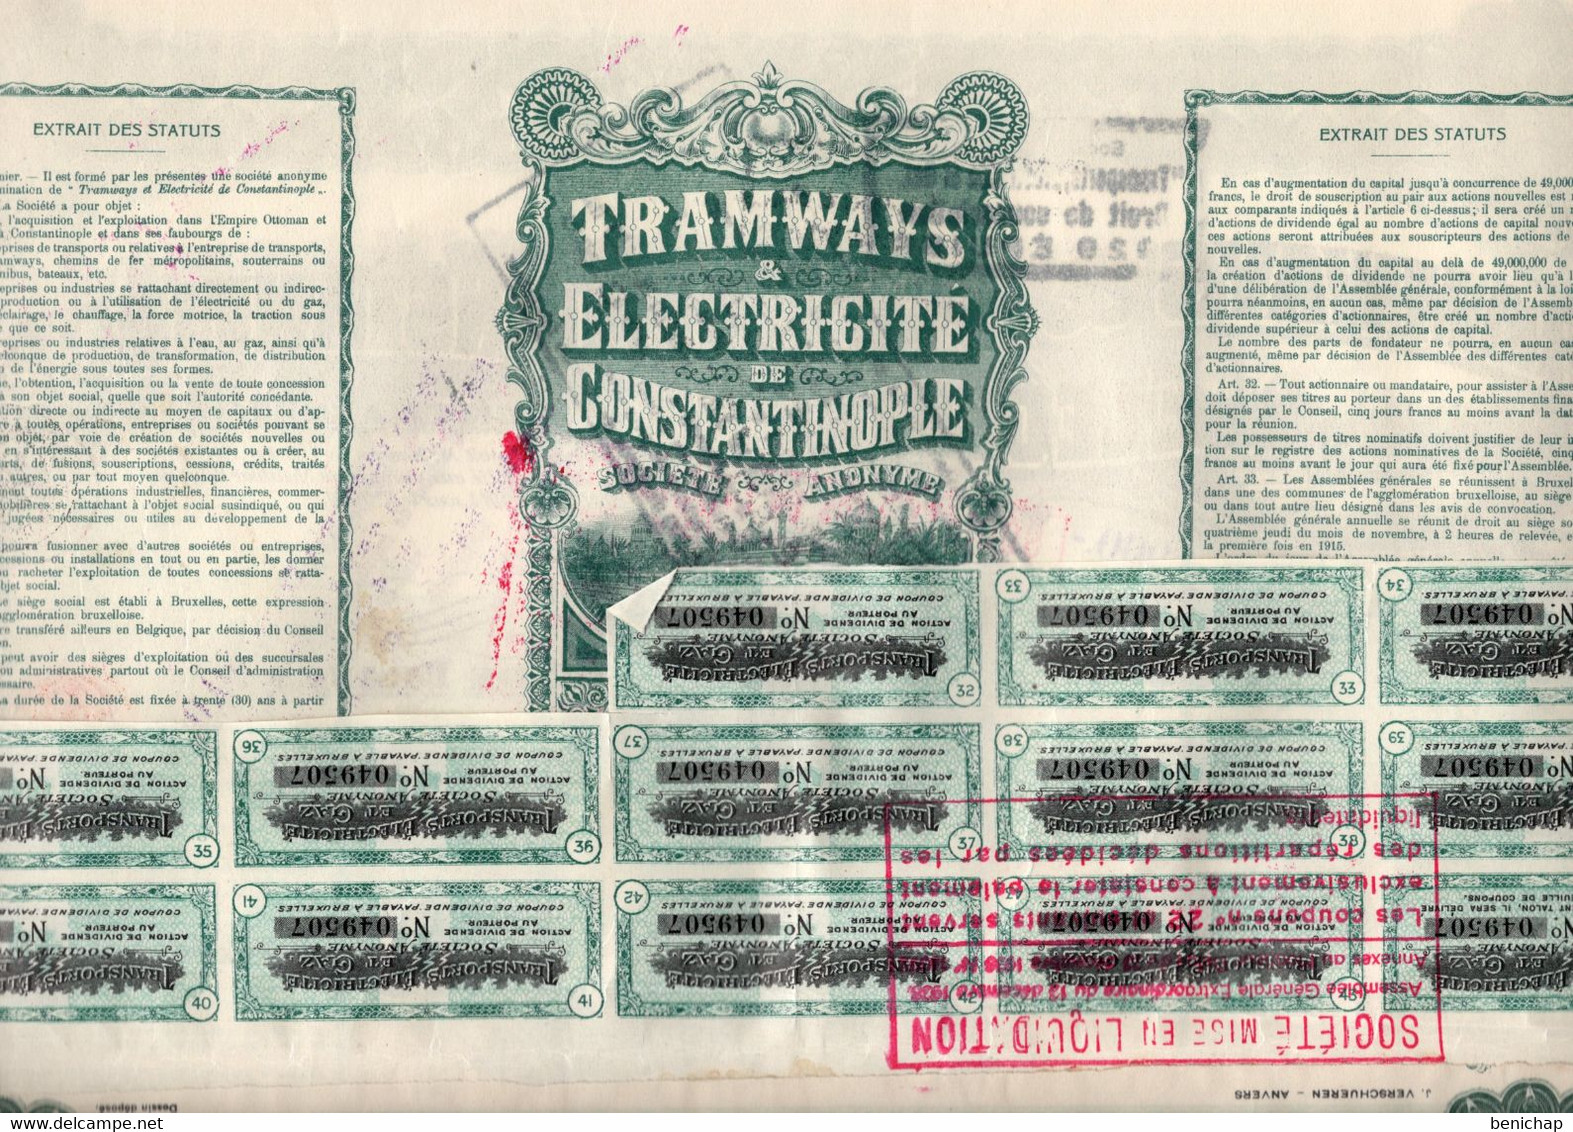 Action De Dividende Au Porteur - Tramways & Electricité De Constantinople S.A. - Ixelles 1914. - Elettricità & Gas